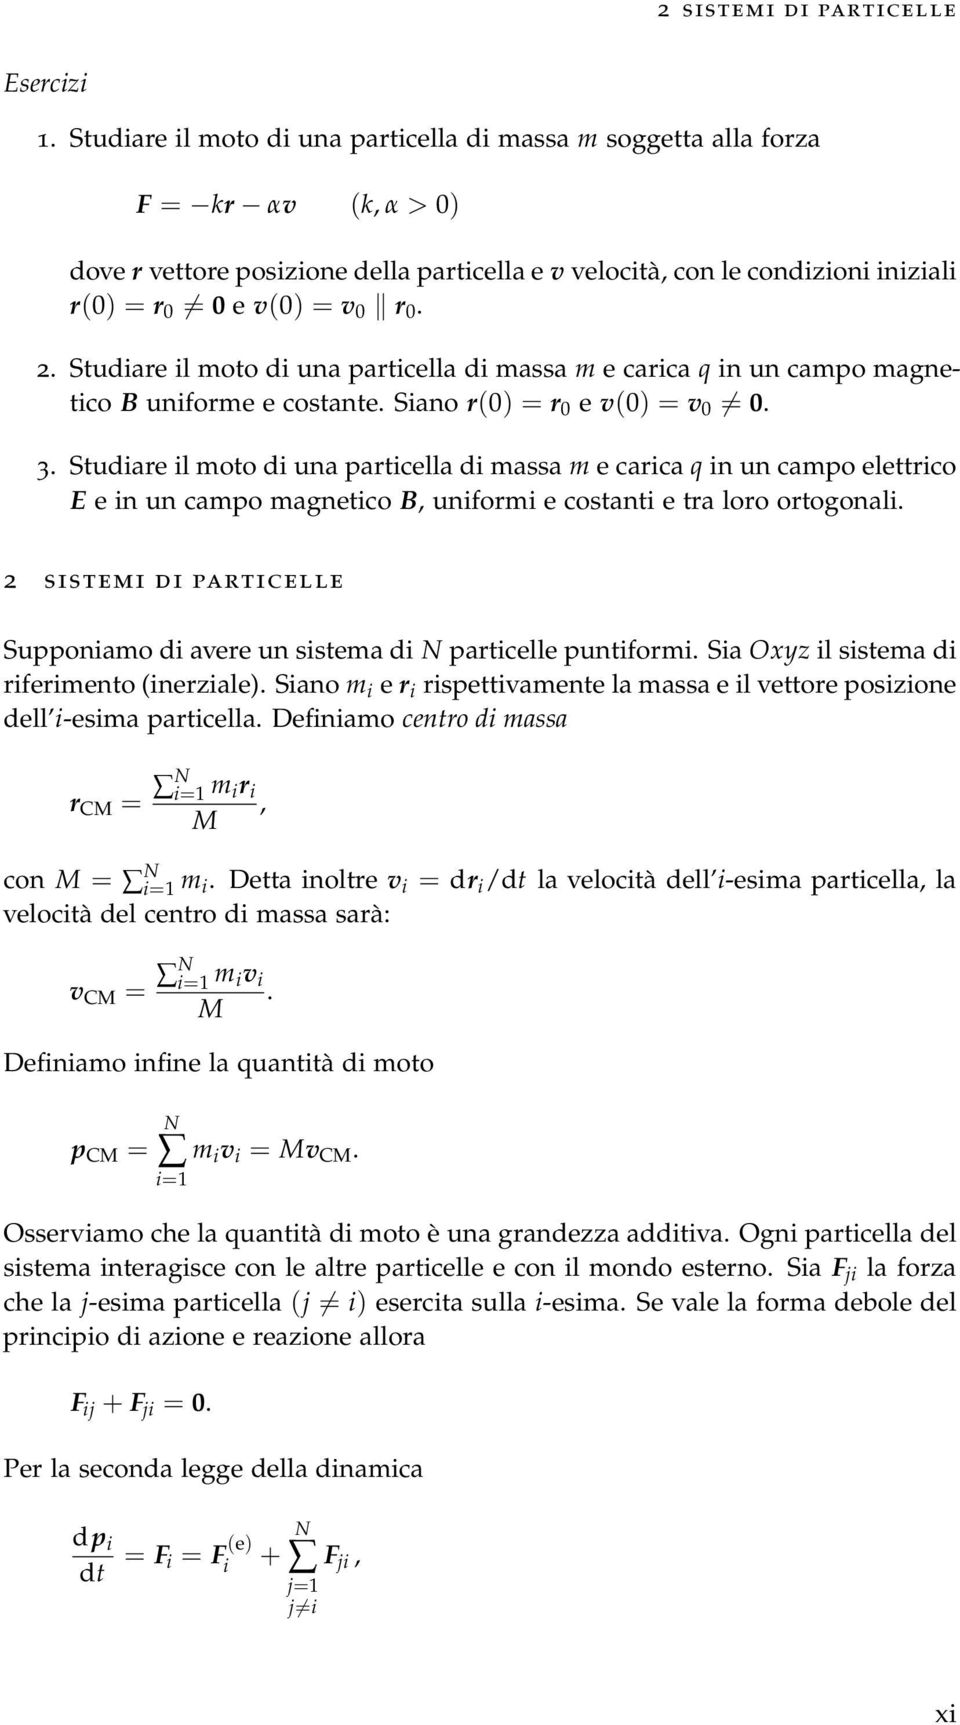 Studiare il moto di ua particella di massa m e carica q i u campo magetico B uiforme e costate. Siao r(0) = r 0 e v(0) = v 0 = 0. 3.